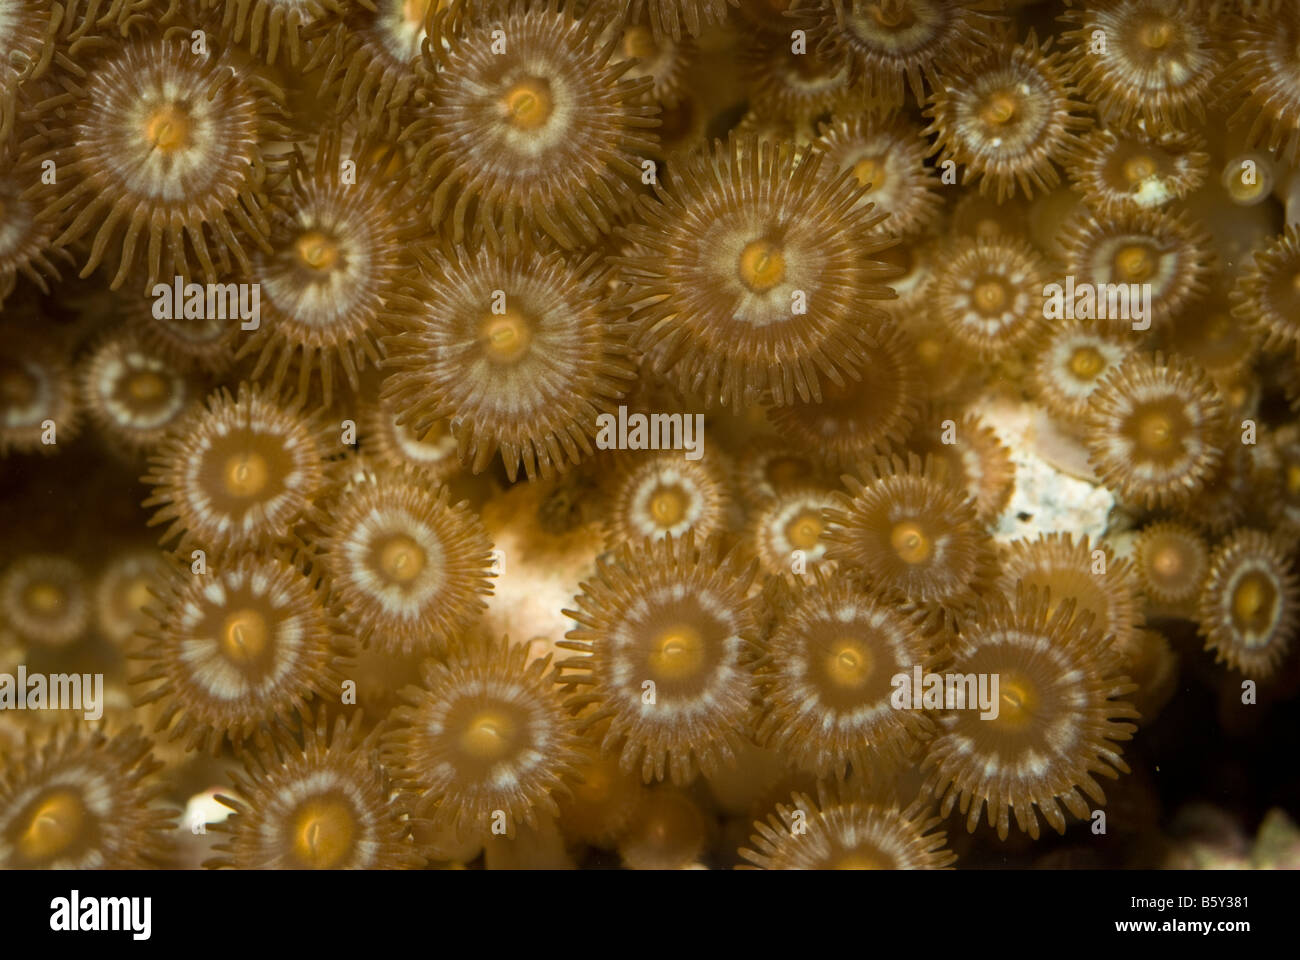 Soft coral reef Zoanthus sp., invertébrés de l'indo-pacifique Banque D'Images